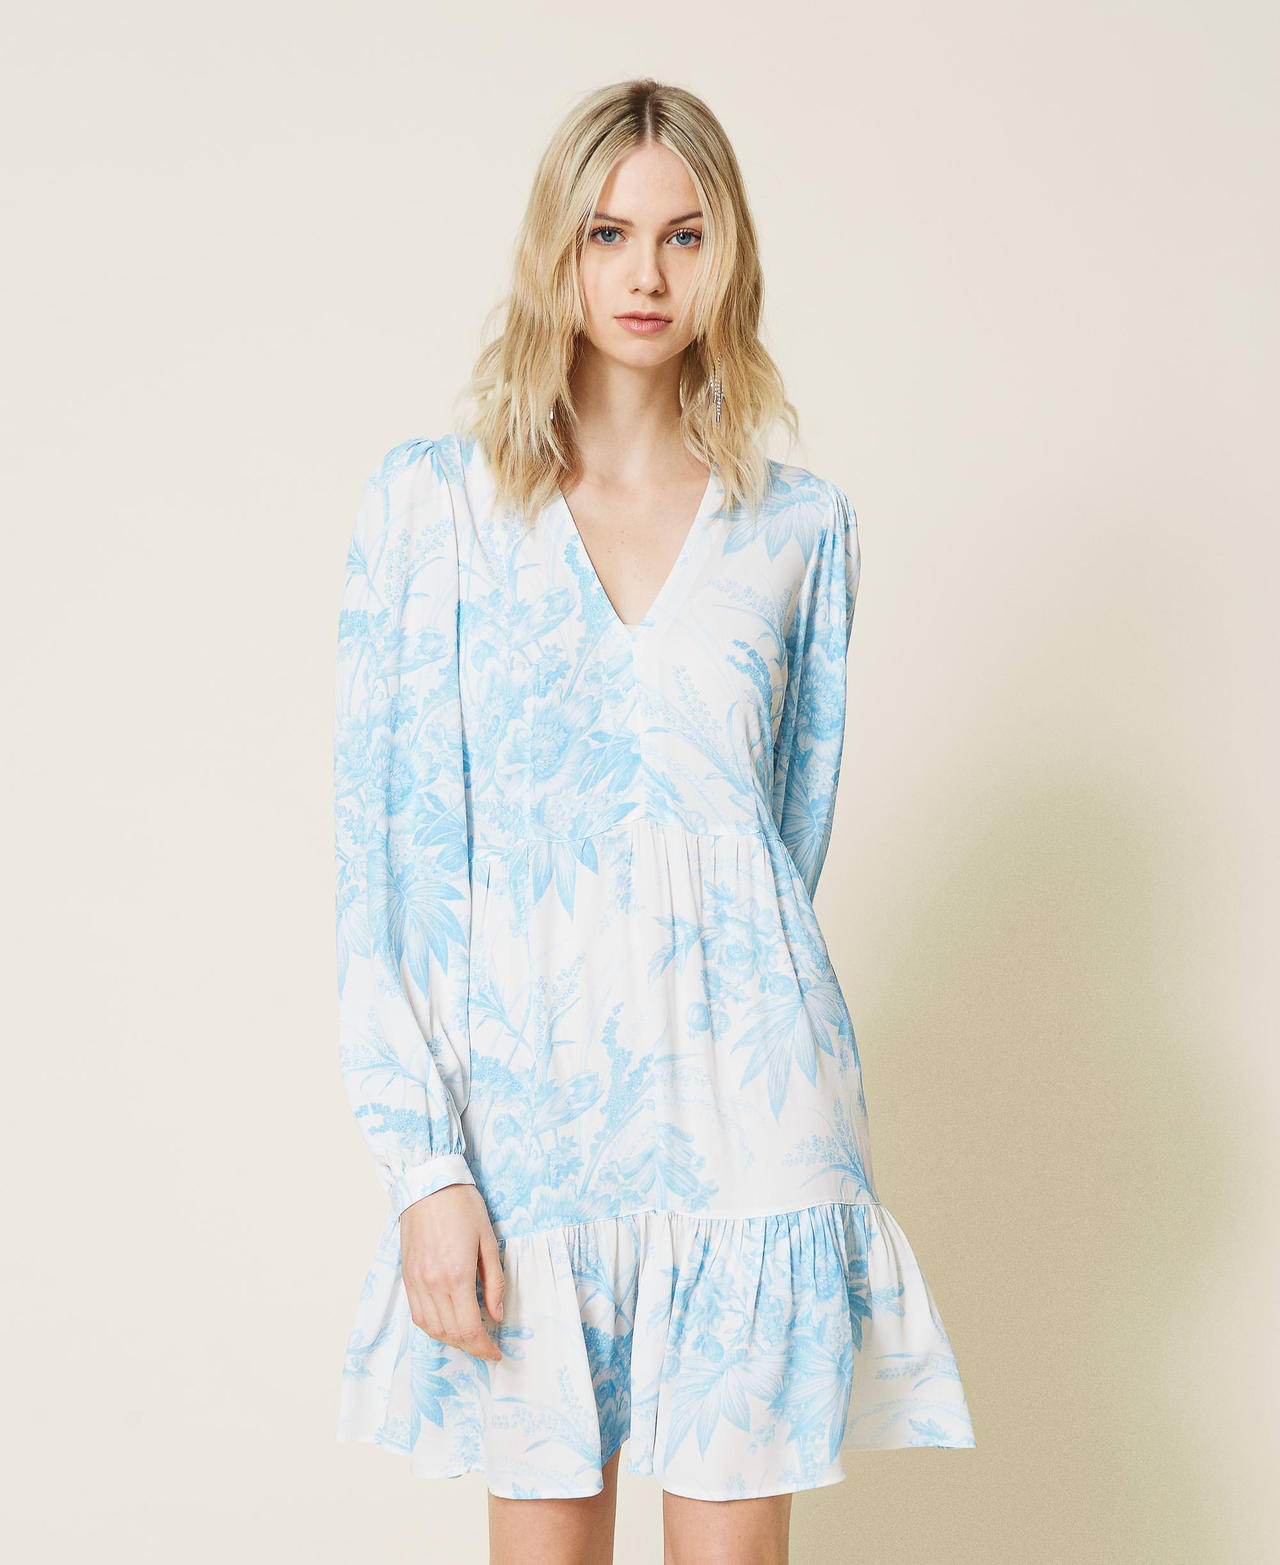 Robe avec imprimé floral toile de Jouy Imprimé Fleur Sanderson Blanc « Neige »/Bleu Femme 221TP271C-02